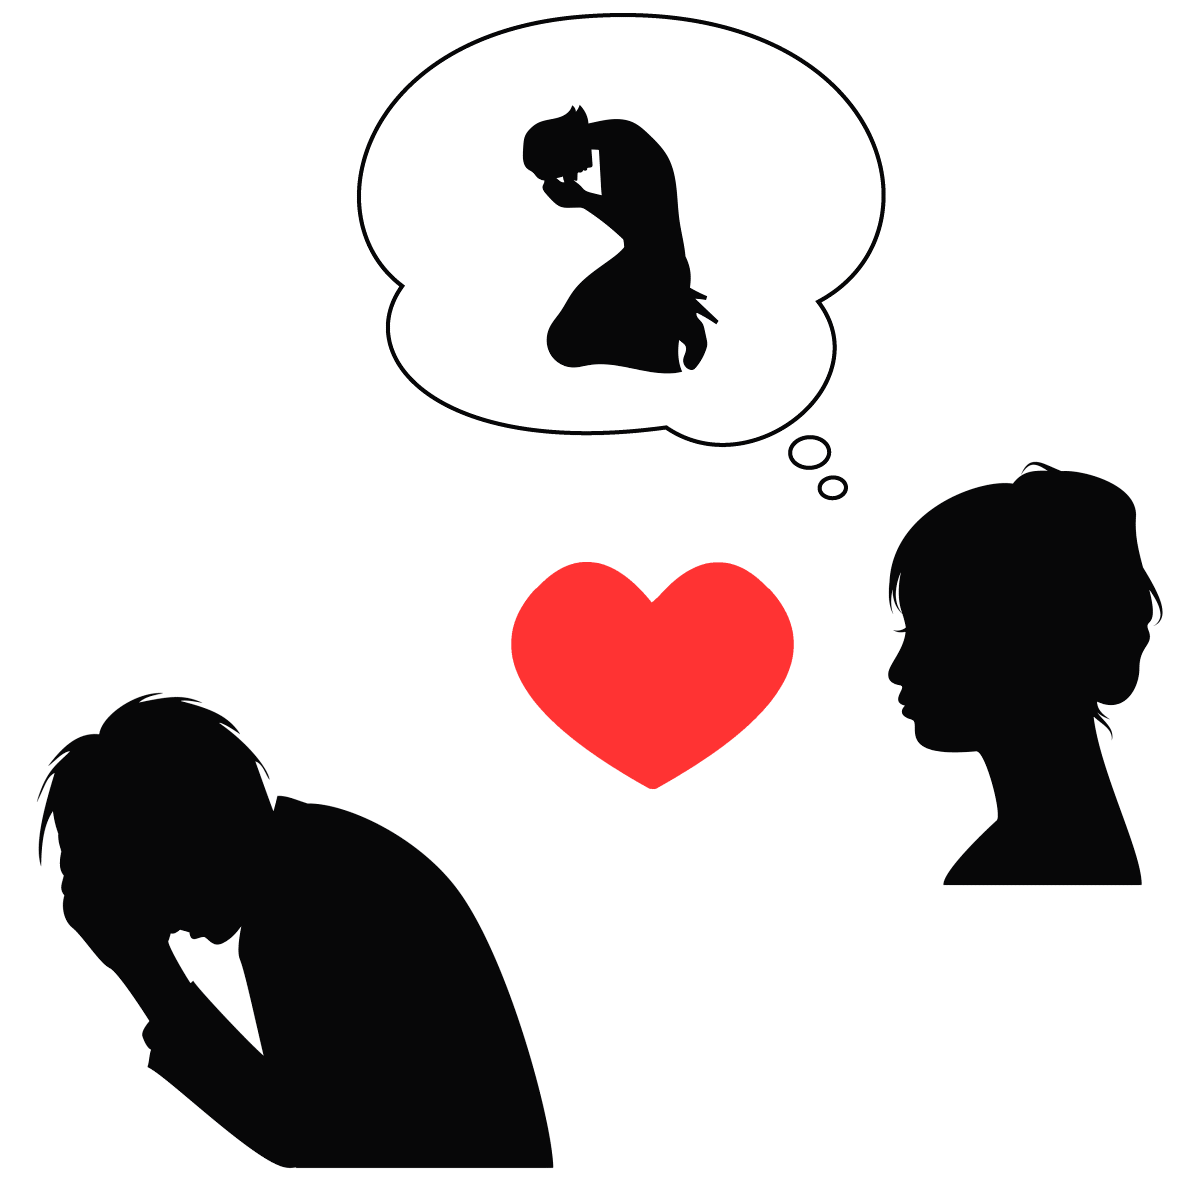 アダルトチルドレン_プラケータータイプの恋愛思考パターンは両親との関係性の影響を受けている様子を表すイラスト